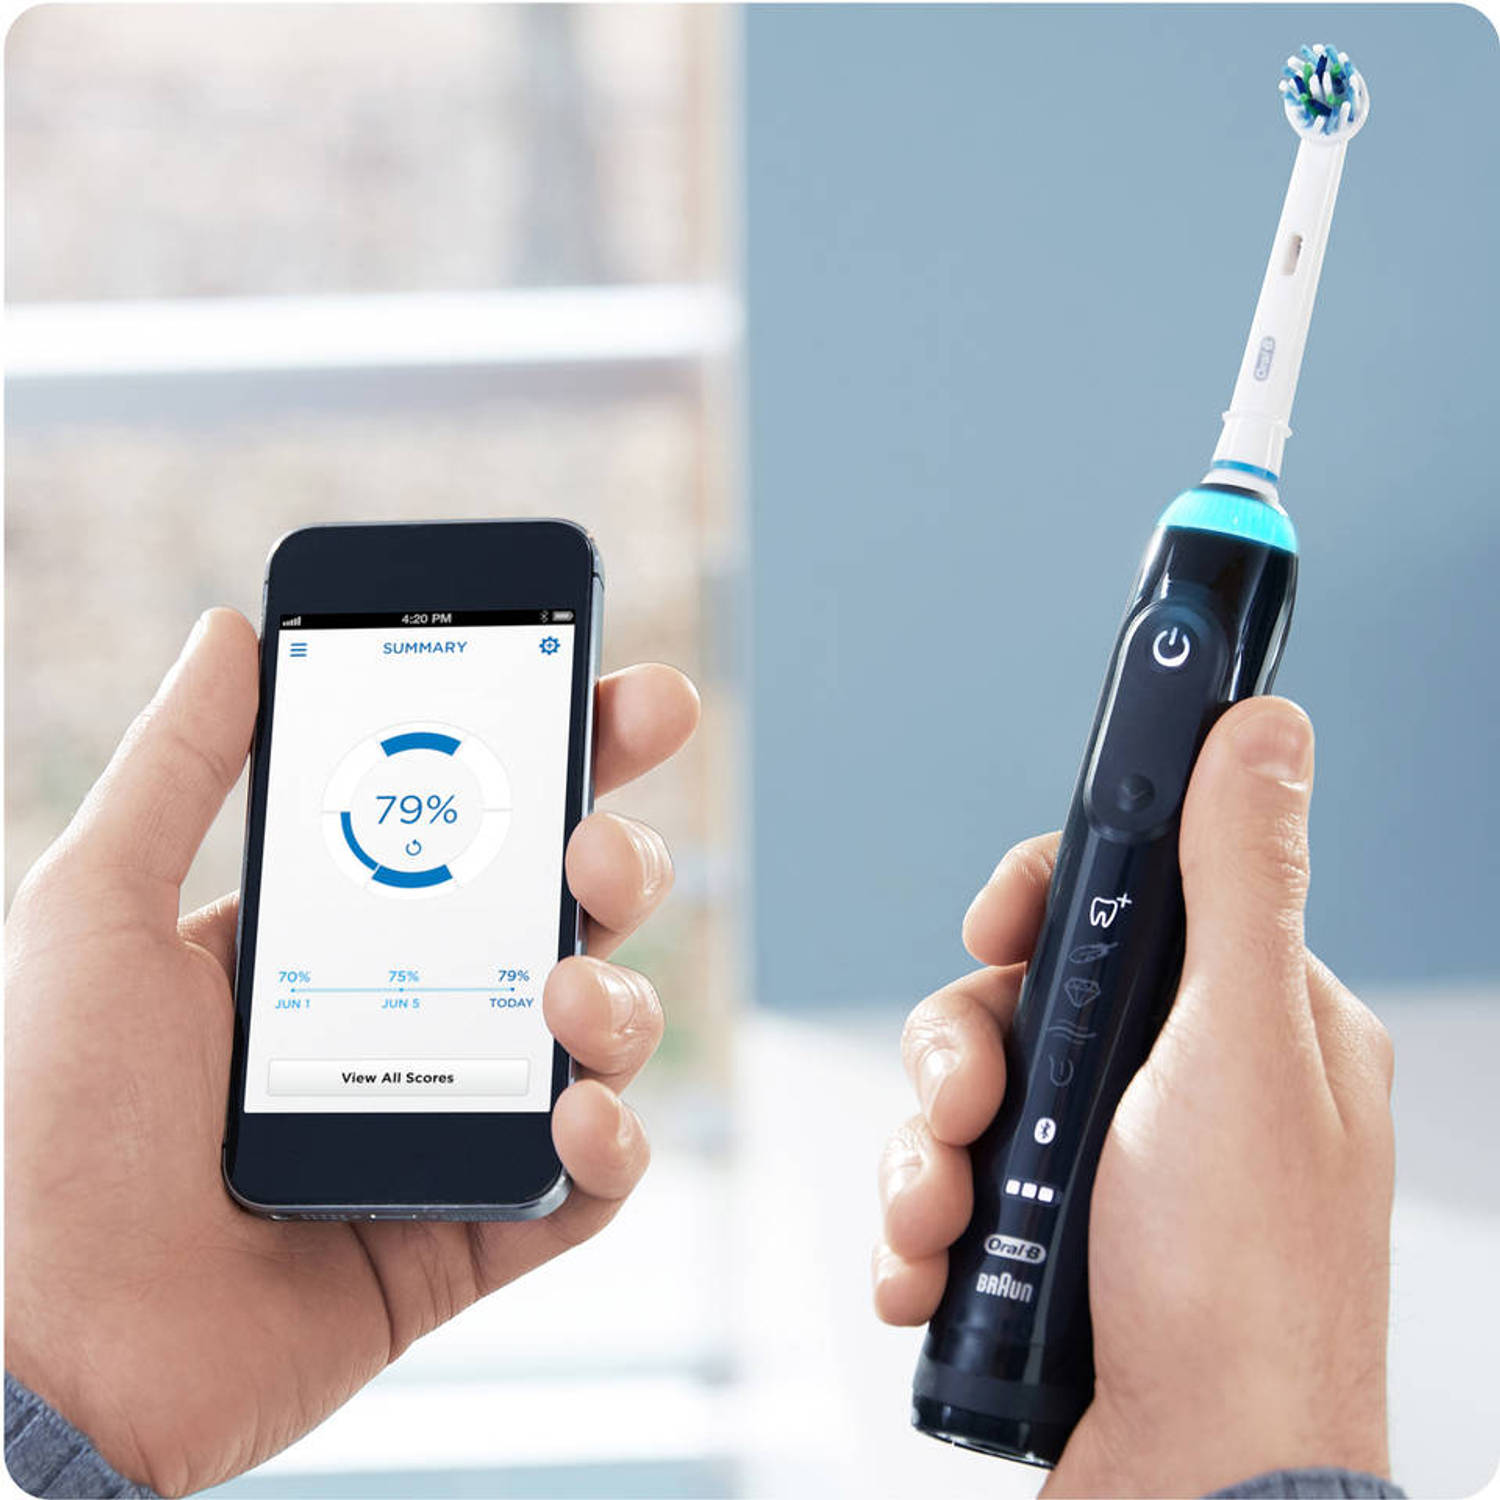 Verplicht Tapijt Onverenigbaar Oral-B elektrische tandenborstel Genius 9100S zwart - 6 poetsstanden |  Blokker